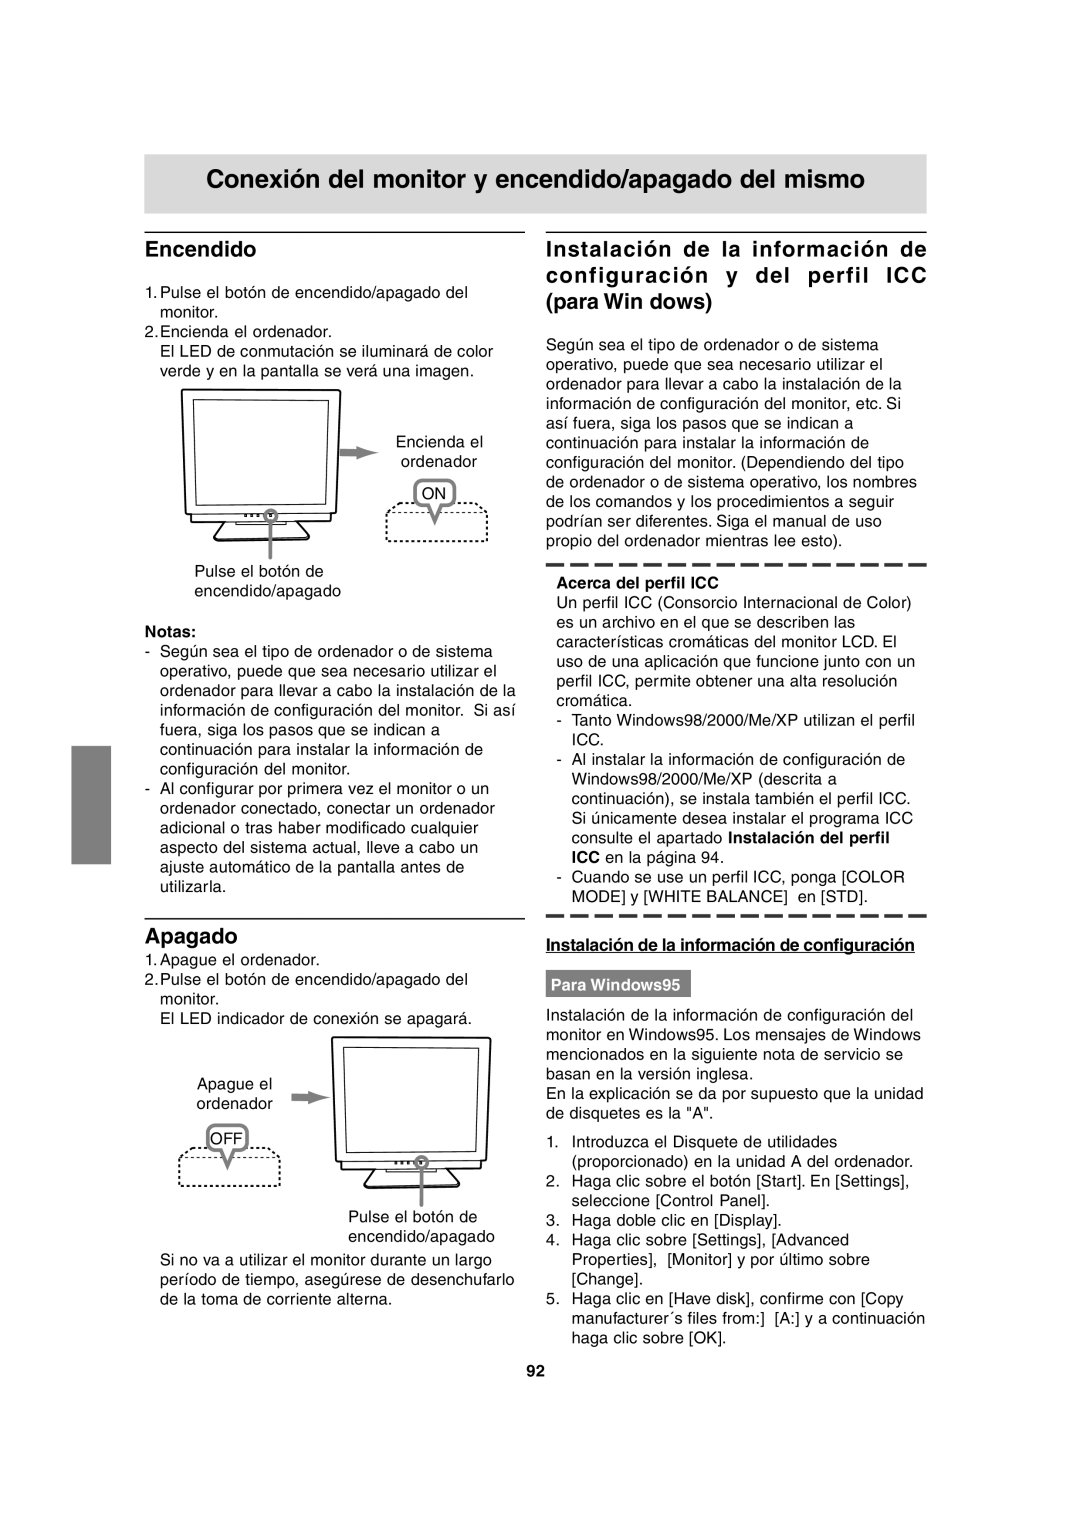 Sharp LL-T17A3 operation manual Conexión del monitor y encendido/apagado del mismo, Encendido, Apagado, Para Windows95 